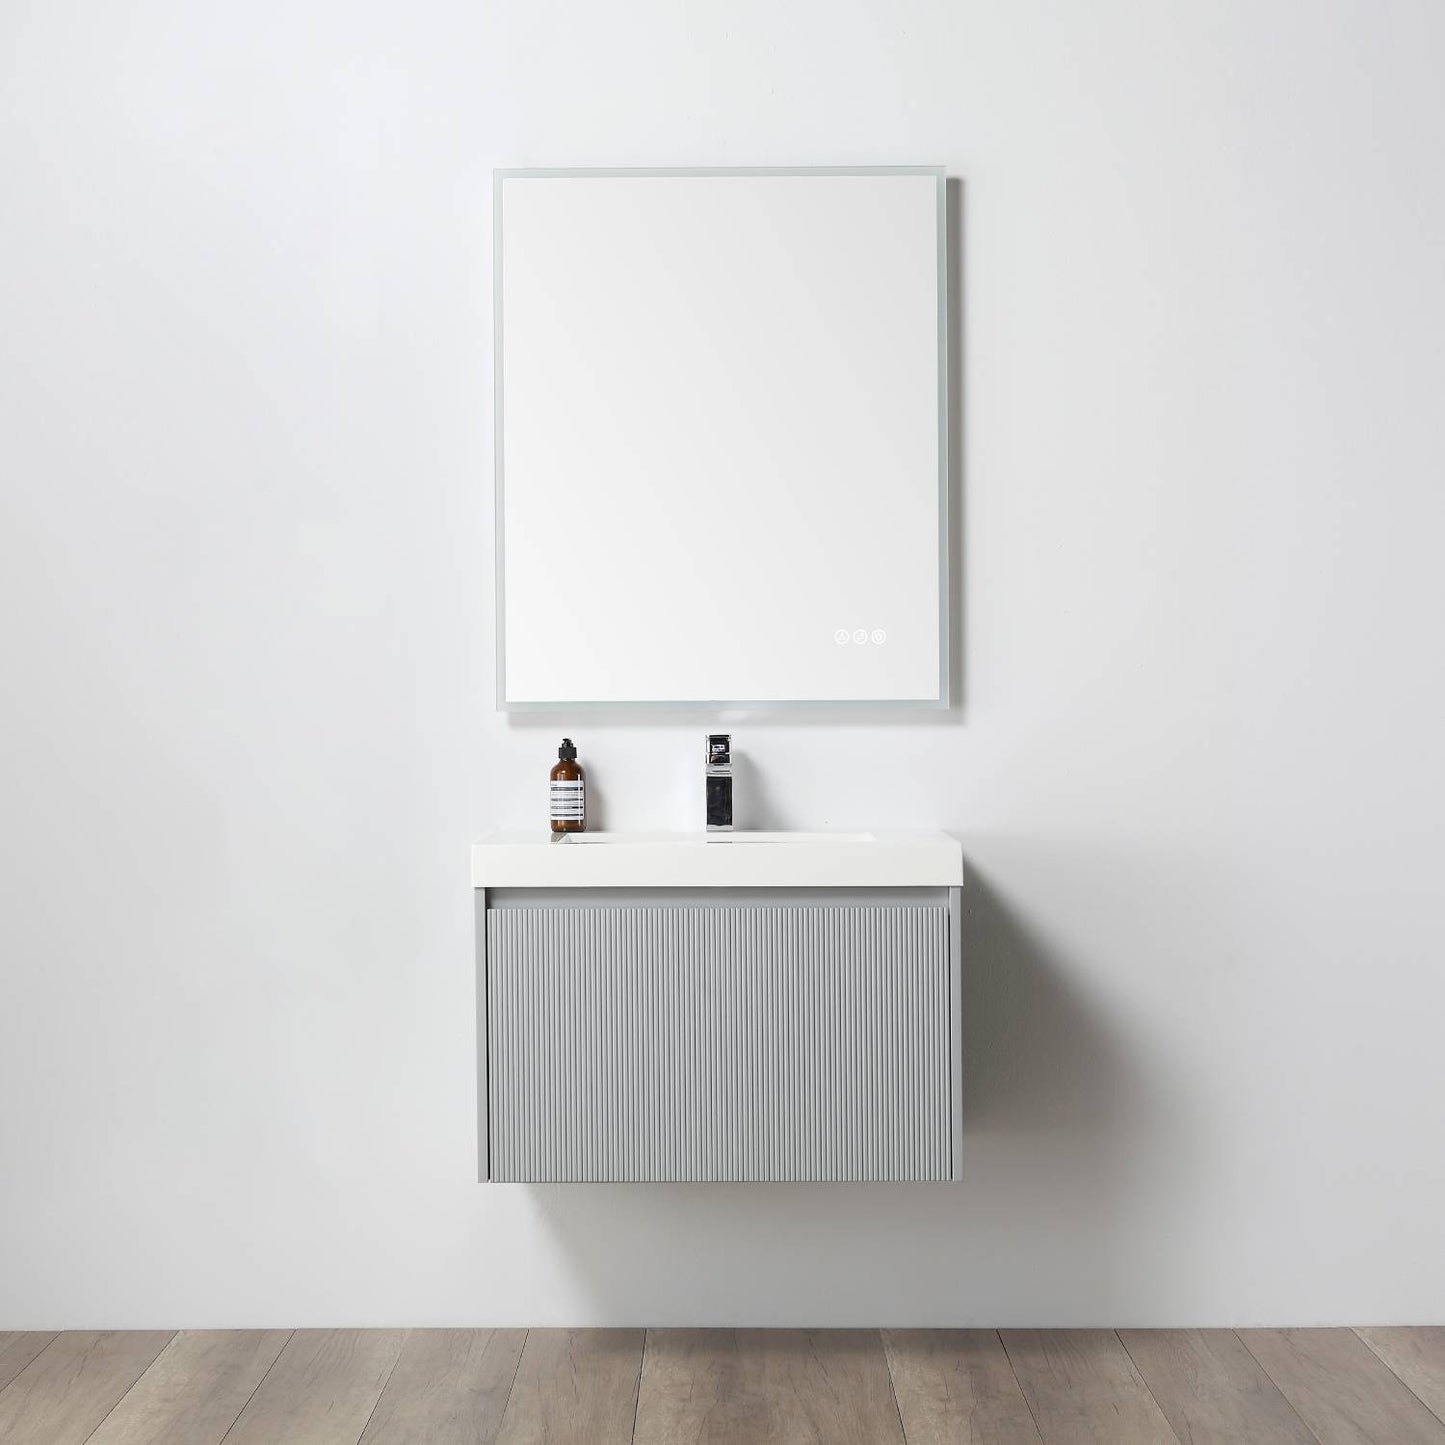 Positano 30" Floating Bathroom Vanity with Acrylic Sink - Light Grey